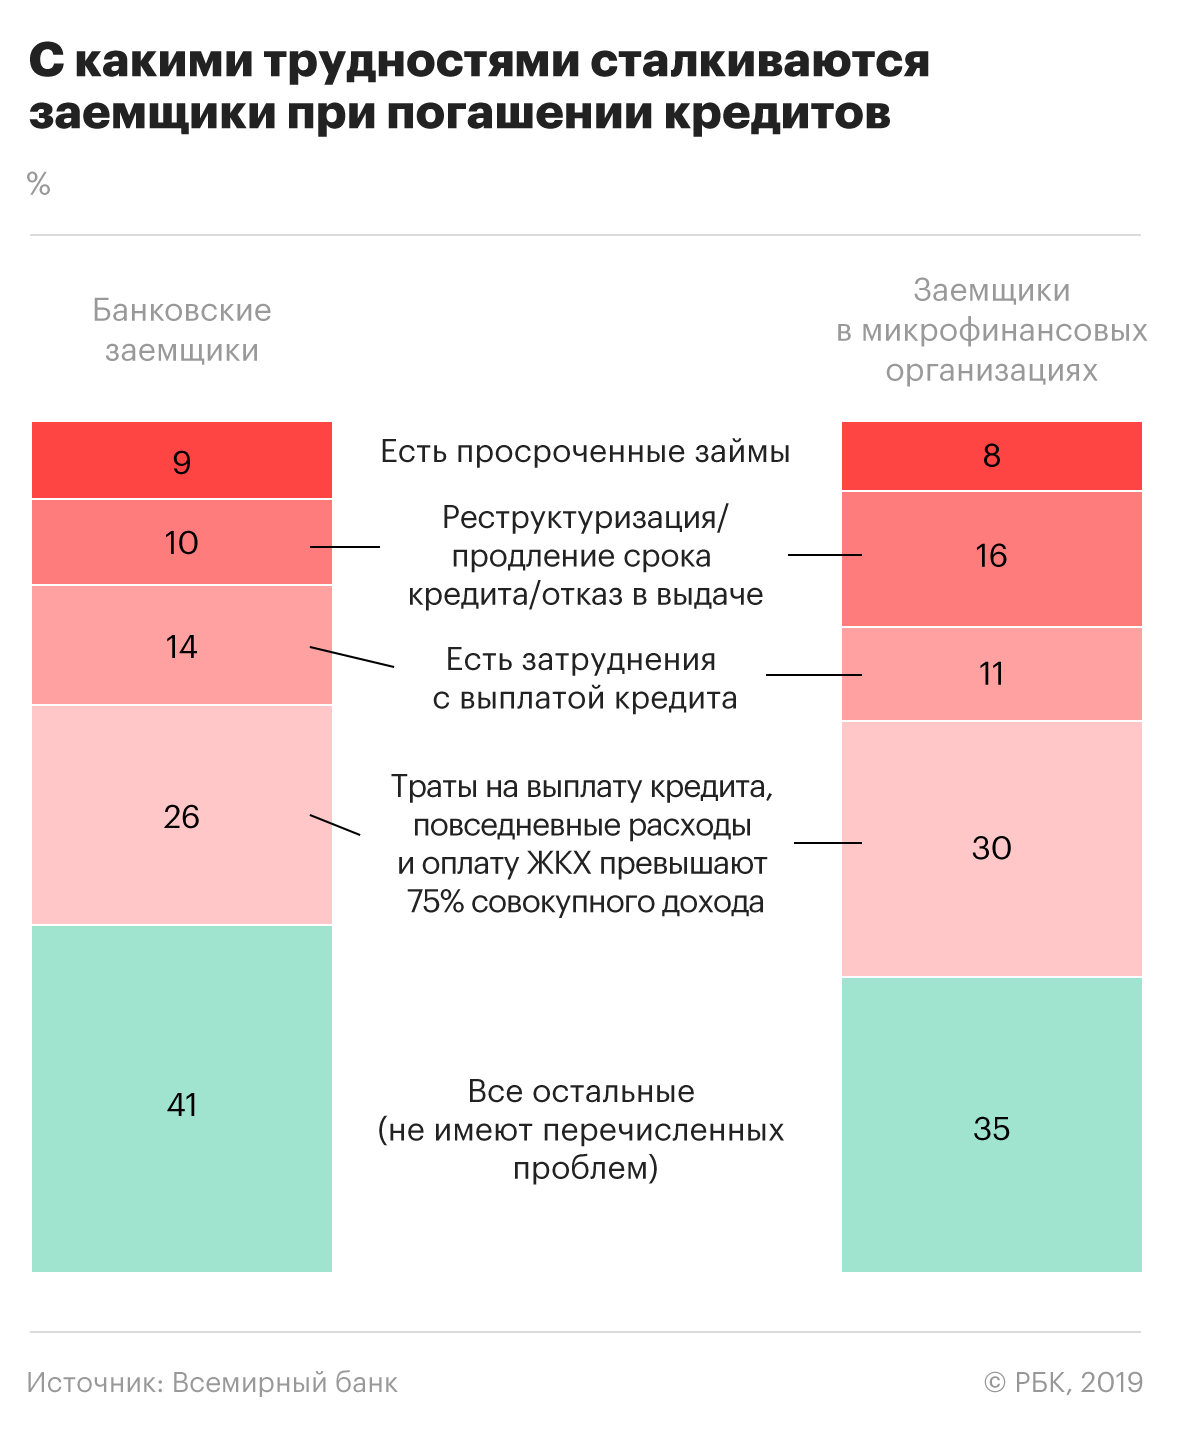 Всемирный банк сообщил о проблемах с кредитами у 60% заемщиков в России